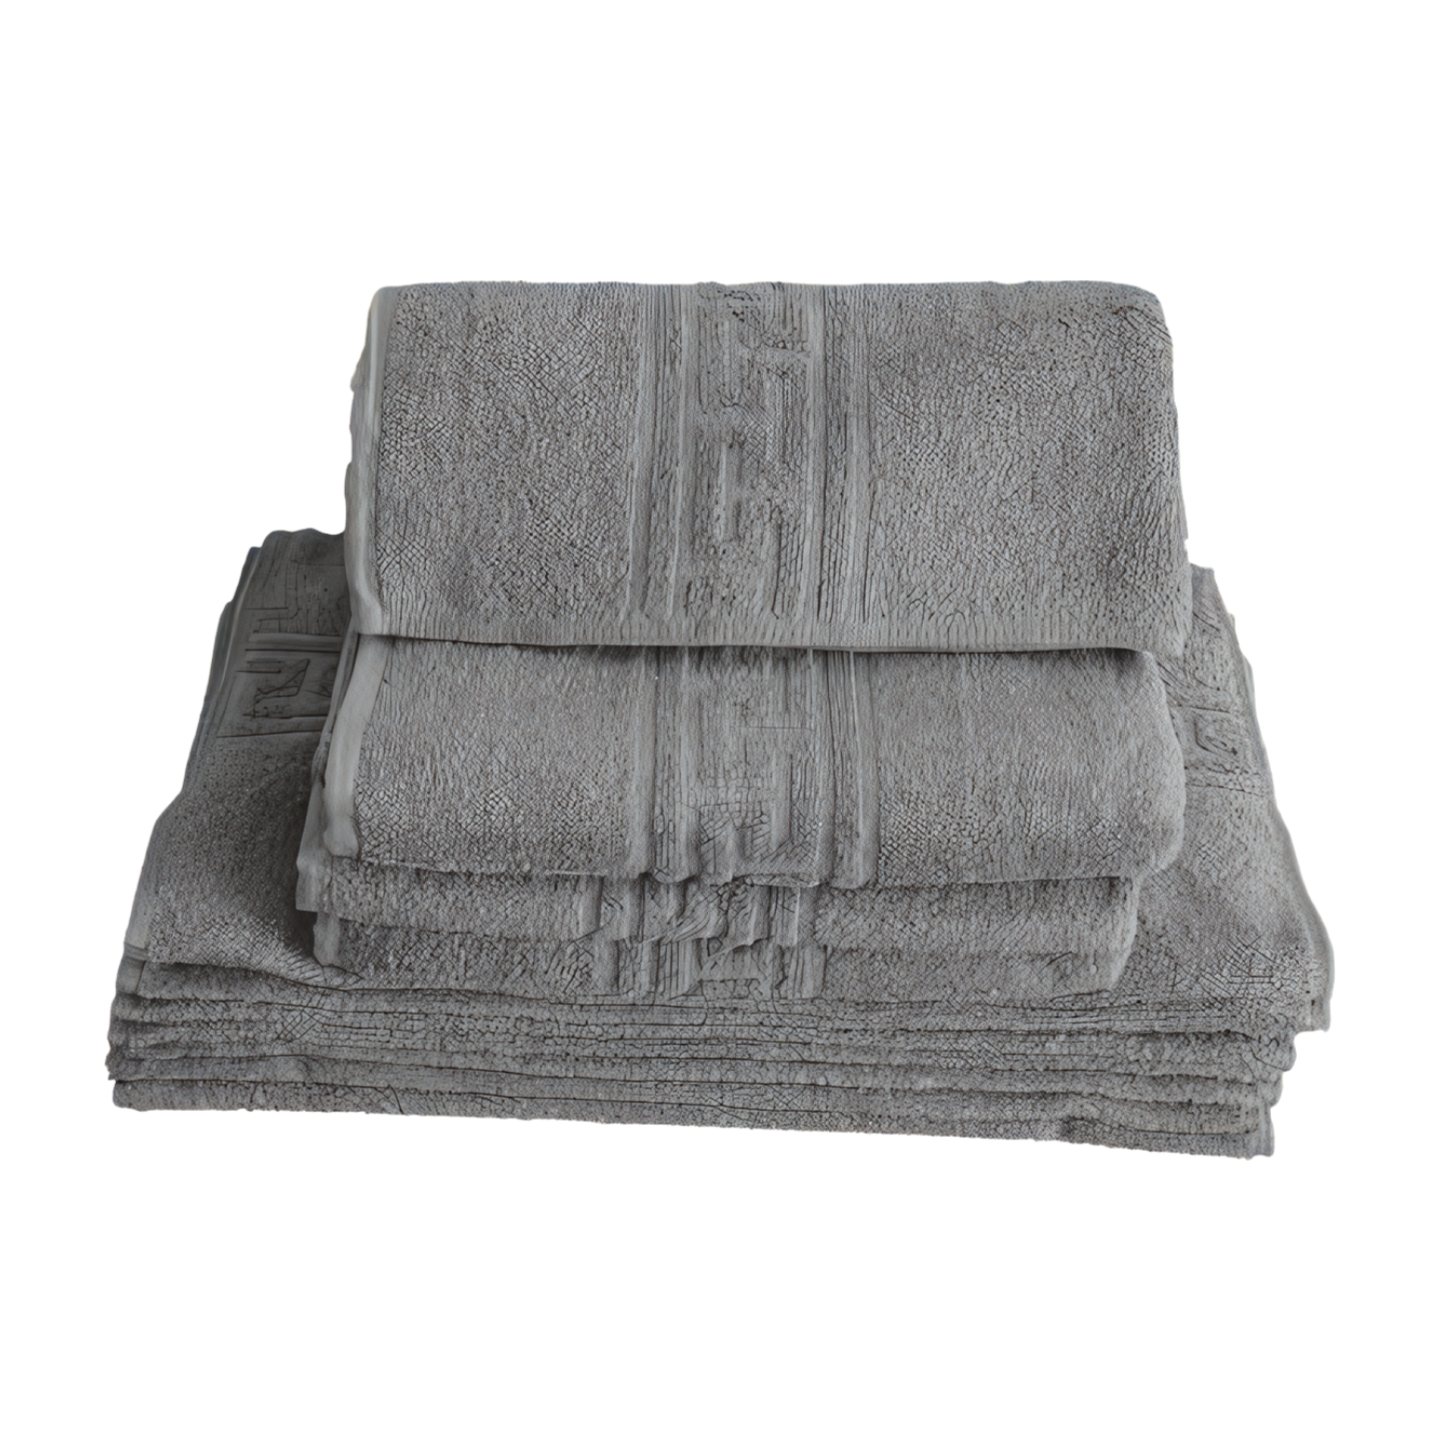 2 σετ πετσέτες Βαμβάκι 100%, Μοντέλο Ελλάδα GRI 67 cm x 130 cm, 48 cm x 85 cm